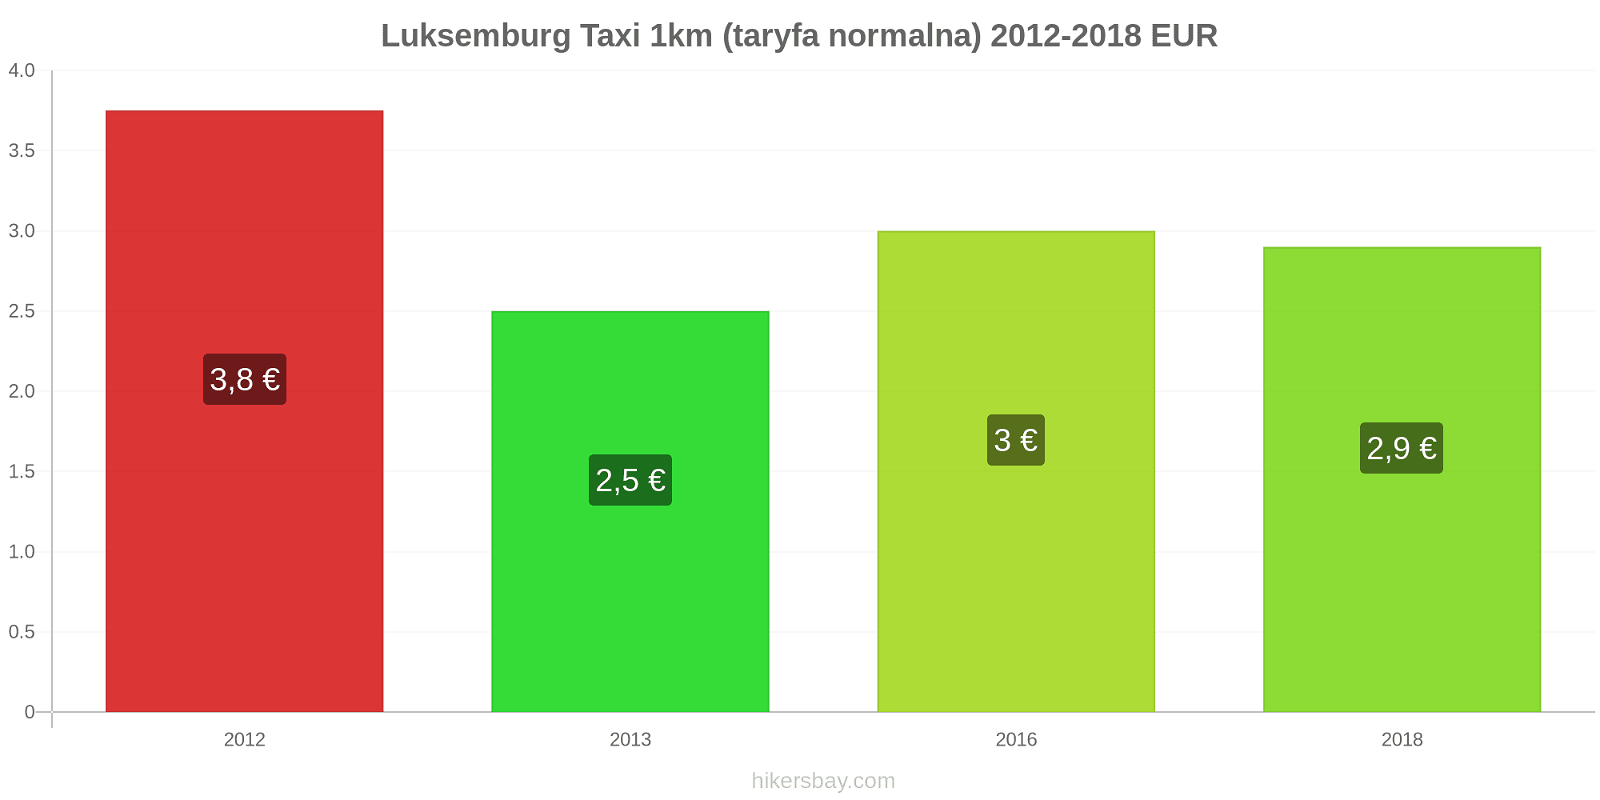 Luksemburg zmiany cen Taxi 1km (taryfa normalna) hikersbay.com